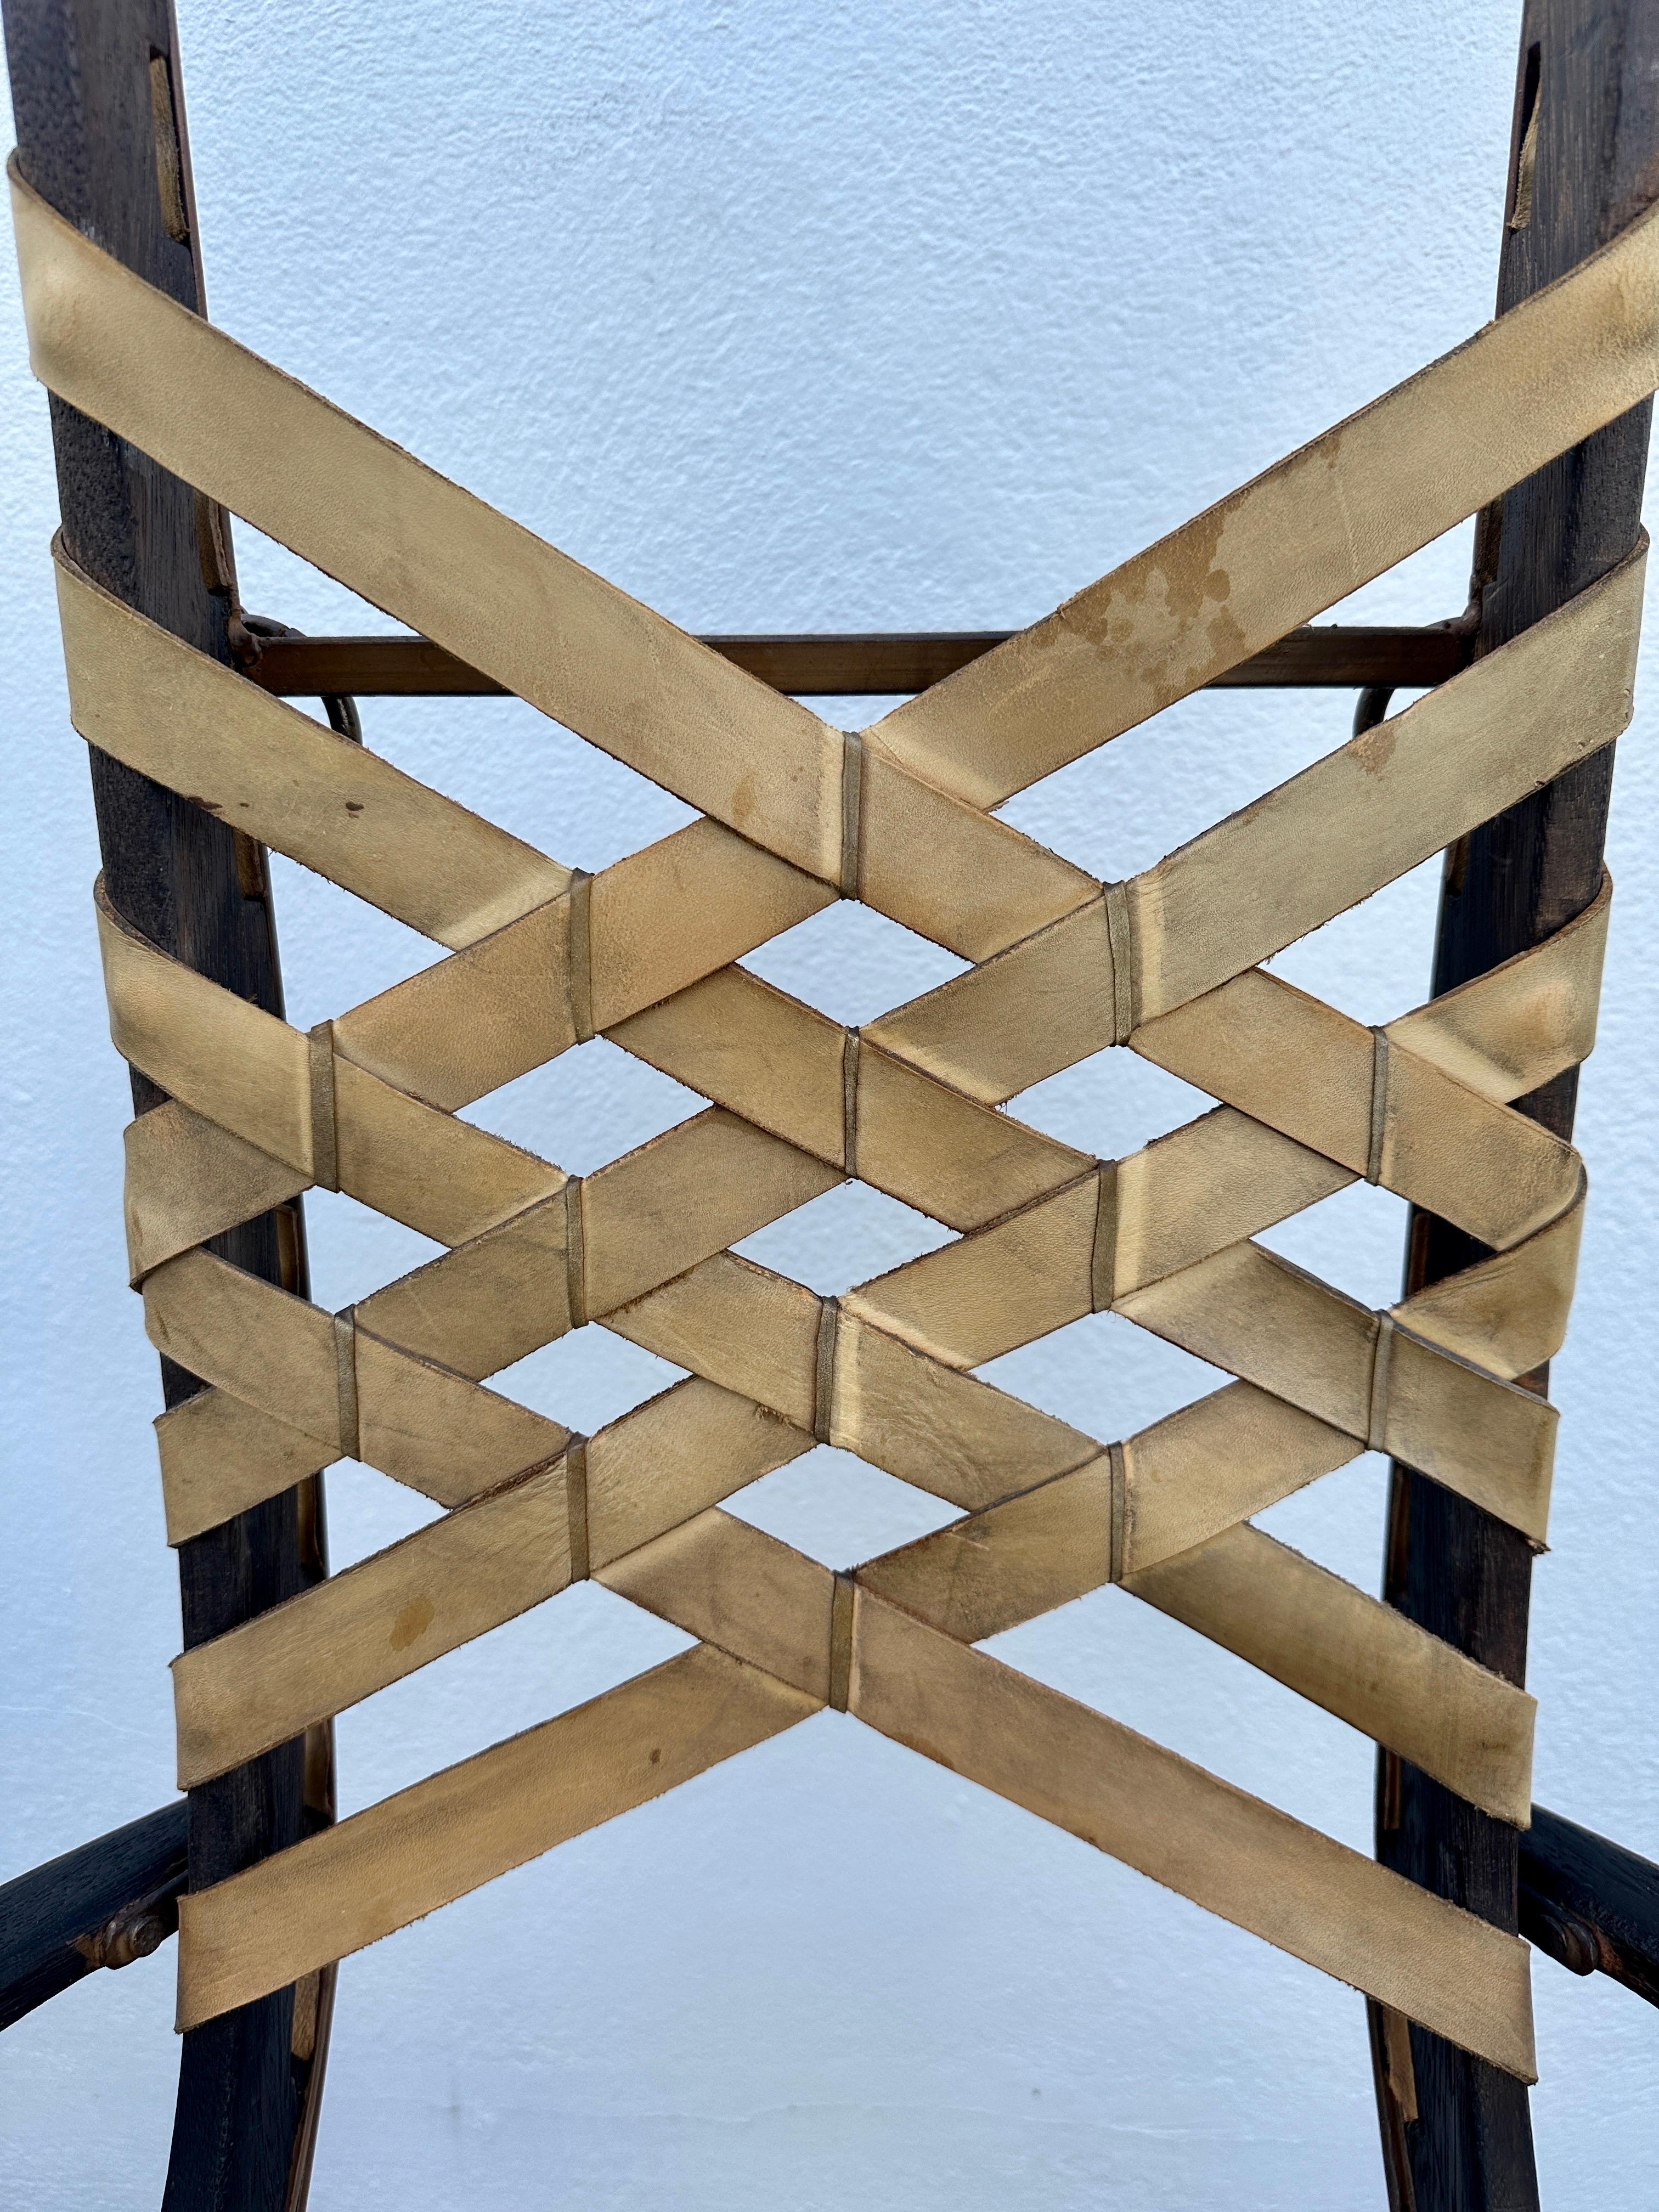 Ces fauteuils étonnamment conçus par Alberto Marconetti sont composés de chêne, de fer peint et de sangles en cuir. Le dossier est en cuir tressé, les cadres en fer peint et les boucles et accents en fer sont partout. Ils sont modernes, mais